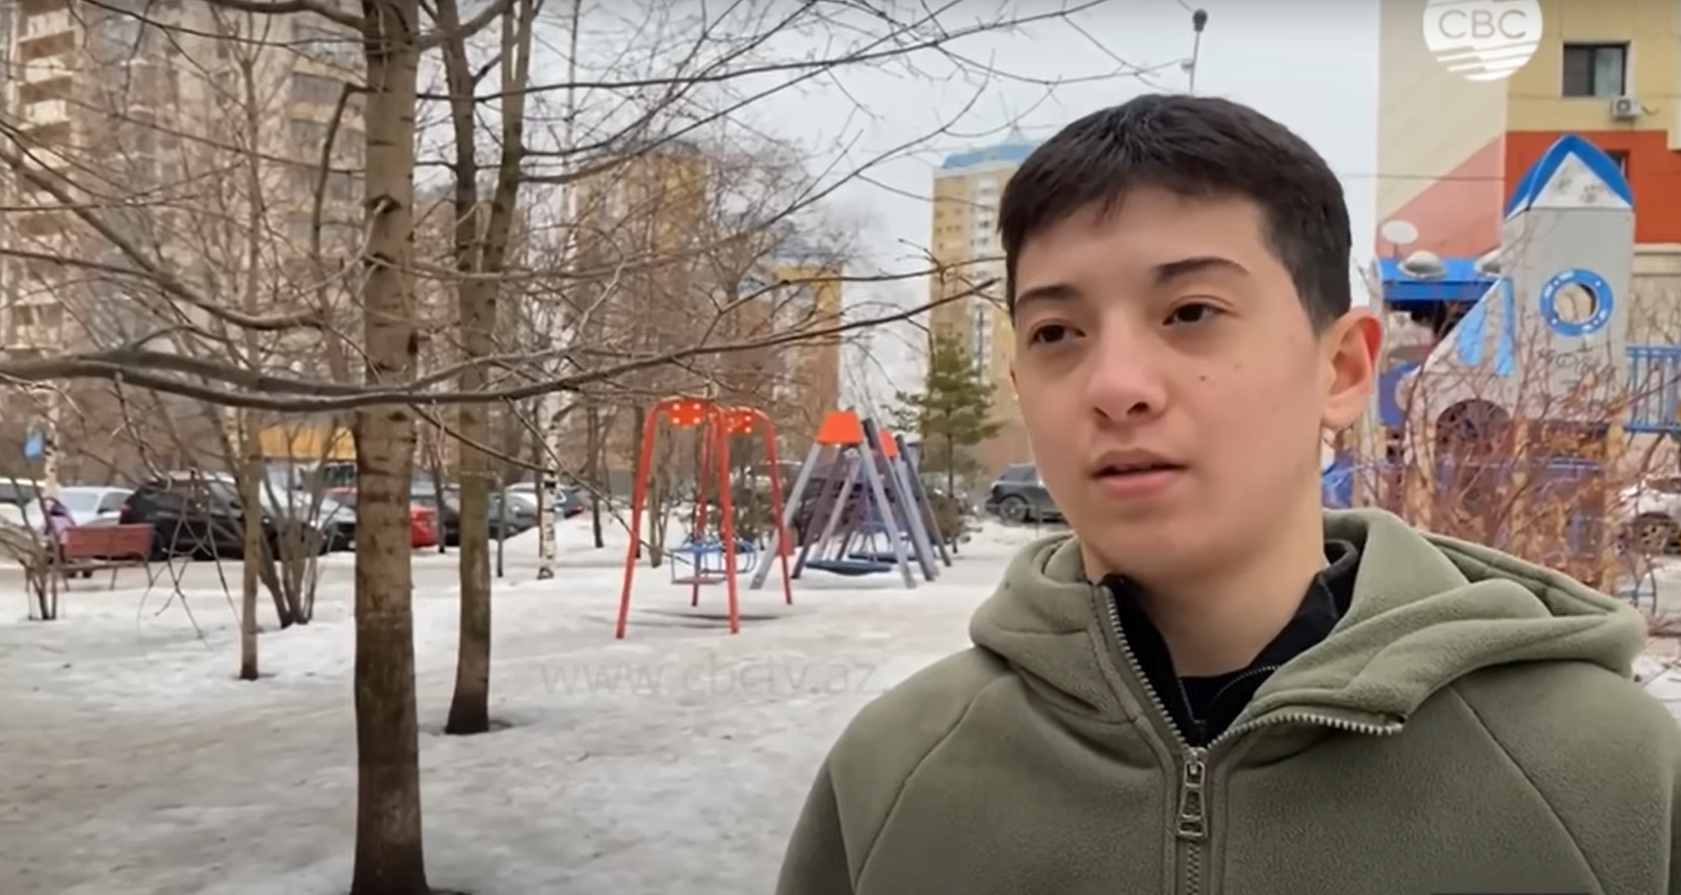 Iszlam, a 15 éves muszlim ruhatáros mentett meg több mint 100 embert az Iszlám Állam terroristáitól Moszkvában